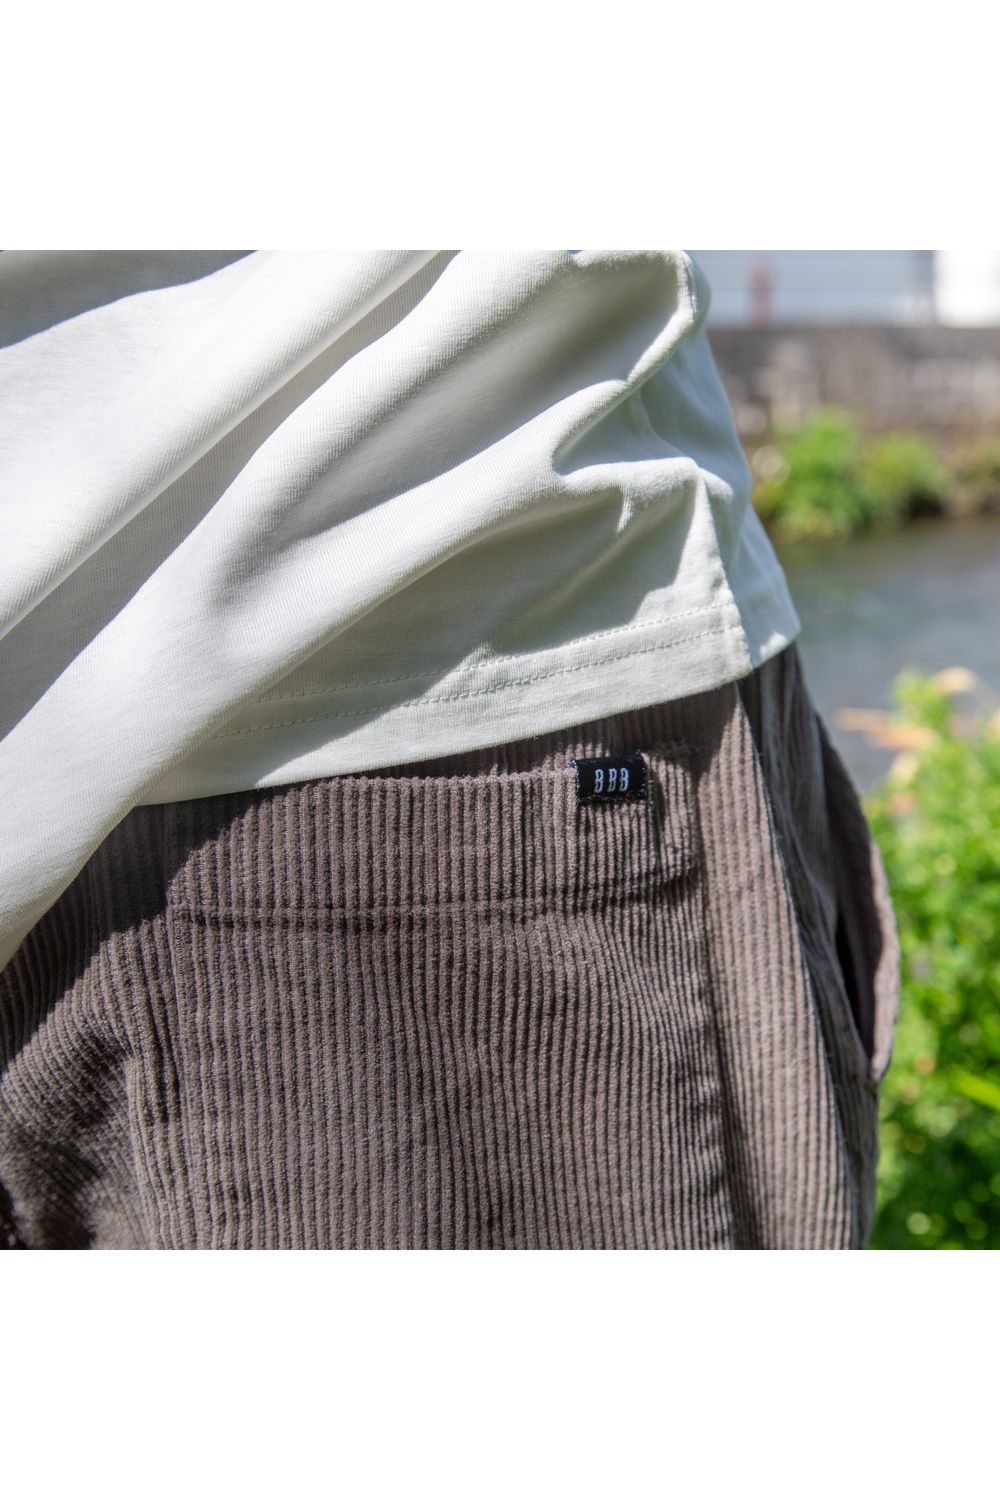 Bamboobay grey cord shorts back pocket and logo